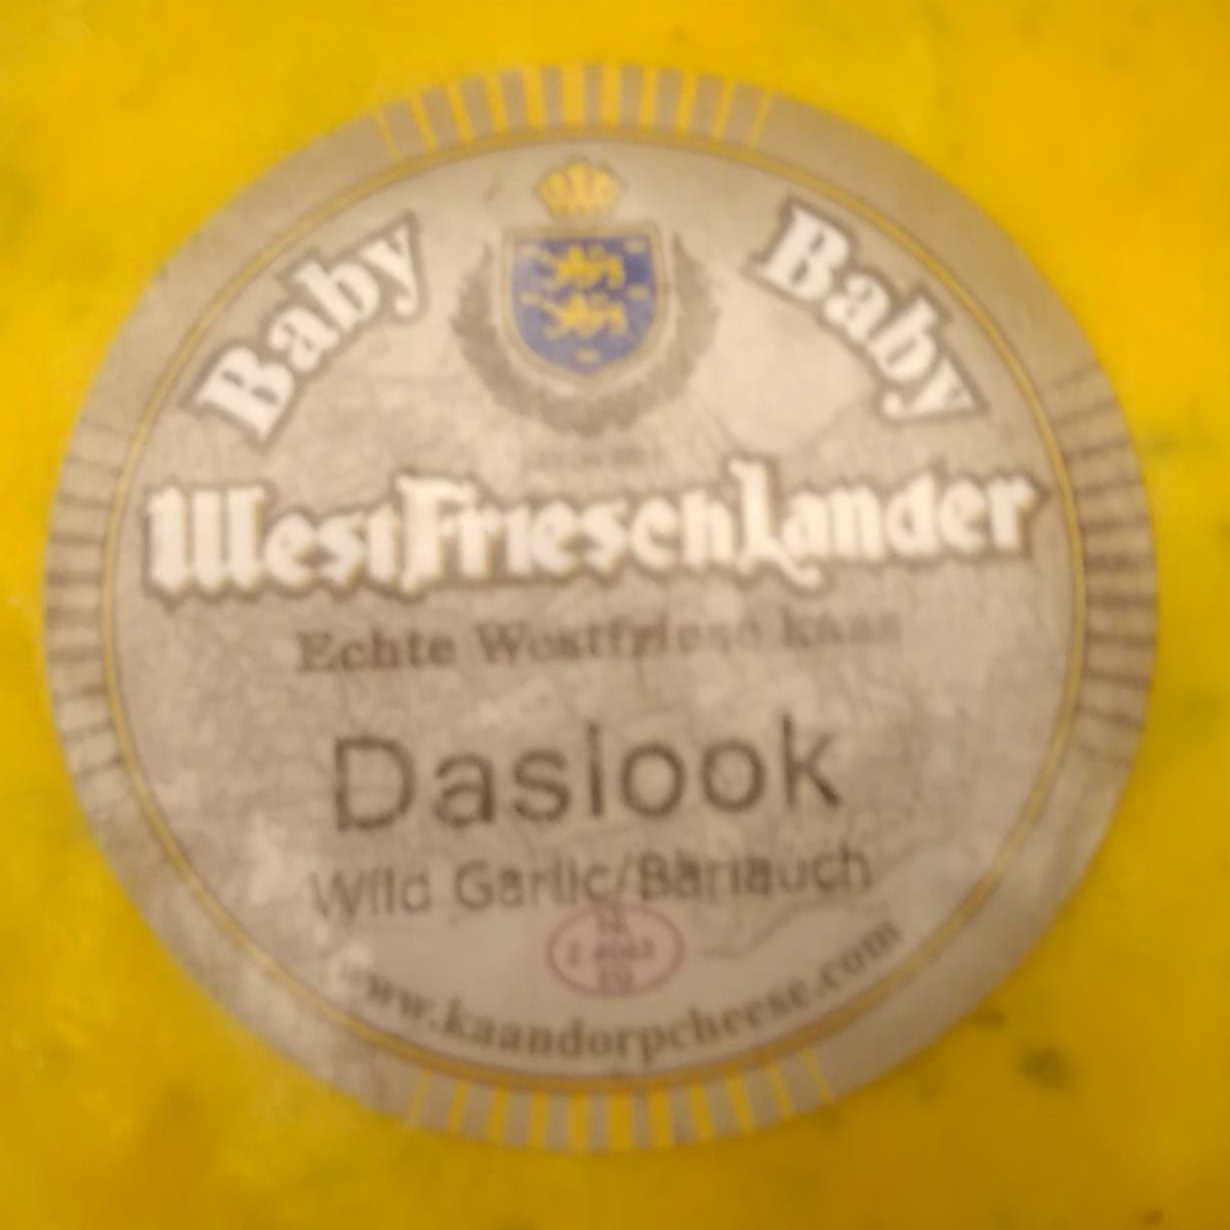 Fotografie - Baby Daslook Wild garlic WestfrieschLander